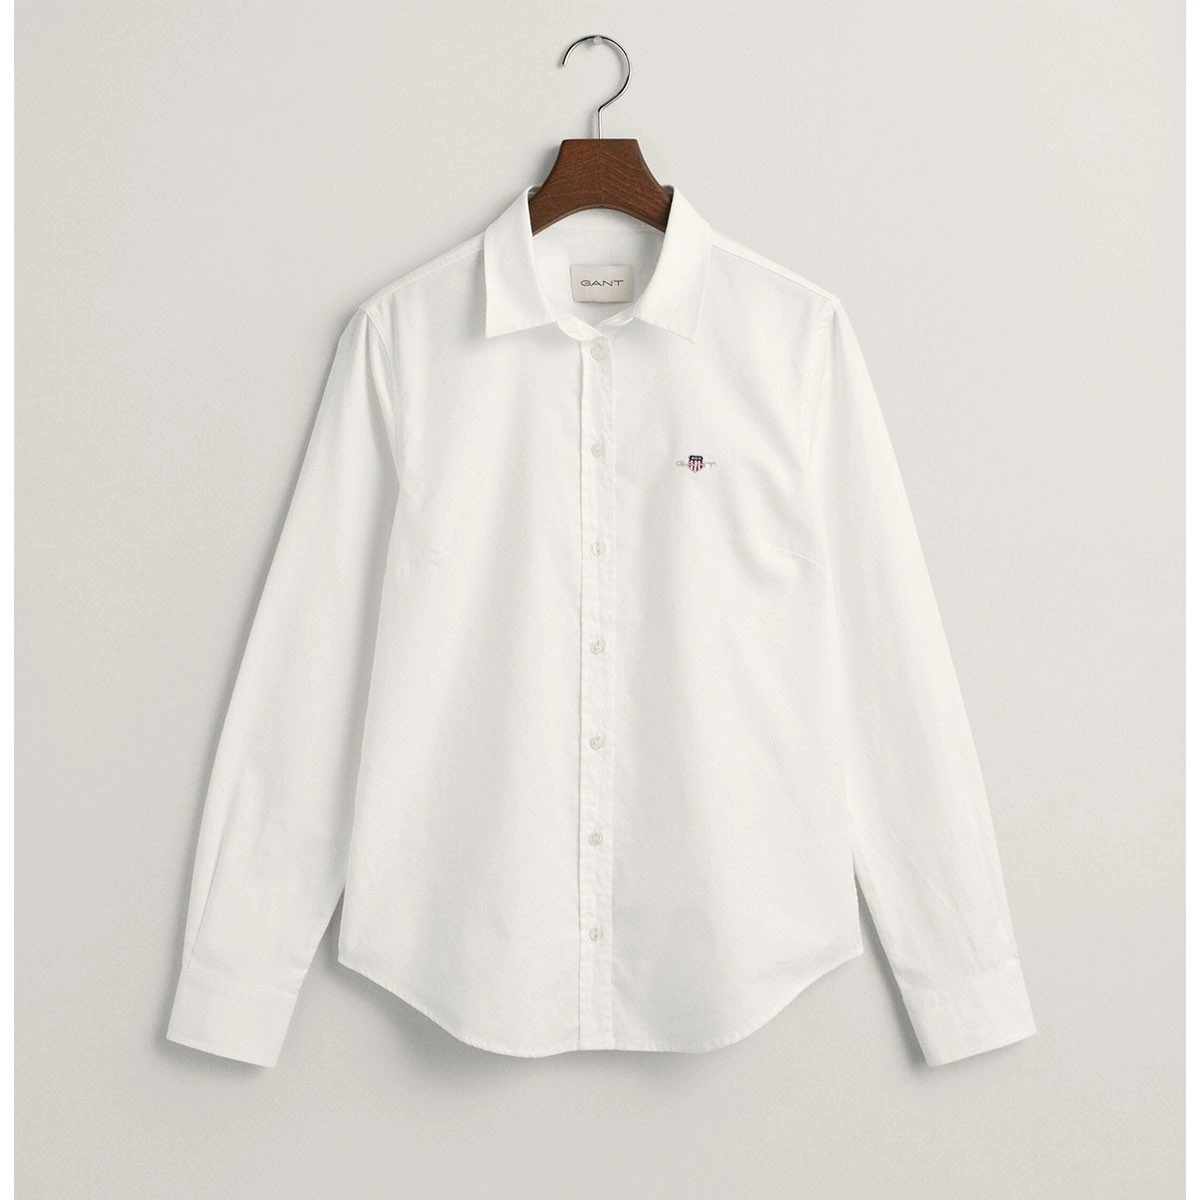 Γυναικείο πουκάμισο Slim Fit Stretch Oxford Shirt - 3GW4300141 - GANT -  Antoniadis Stores